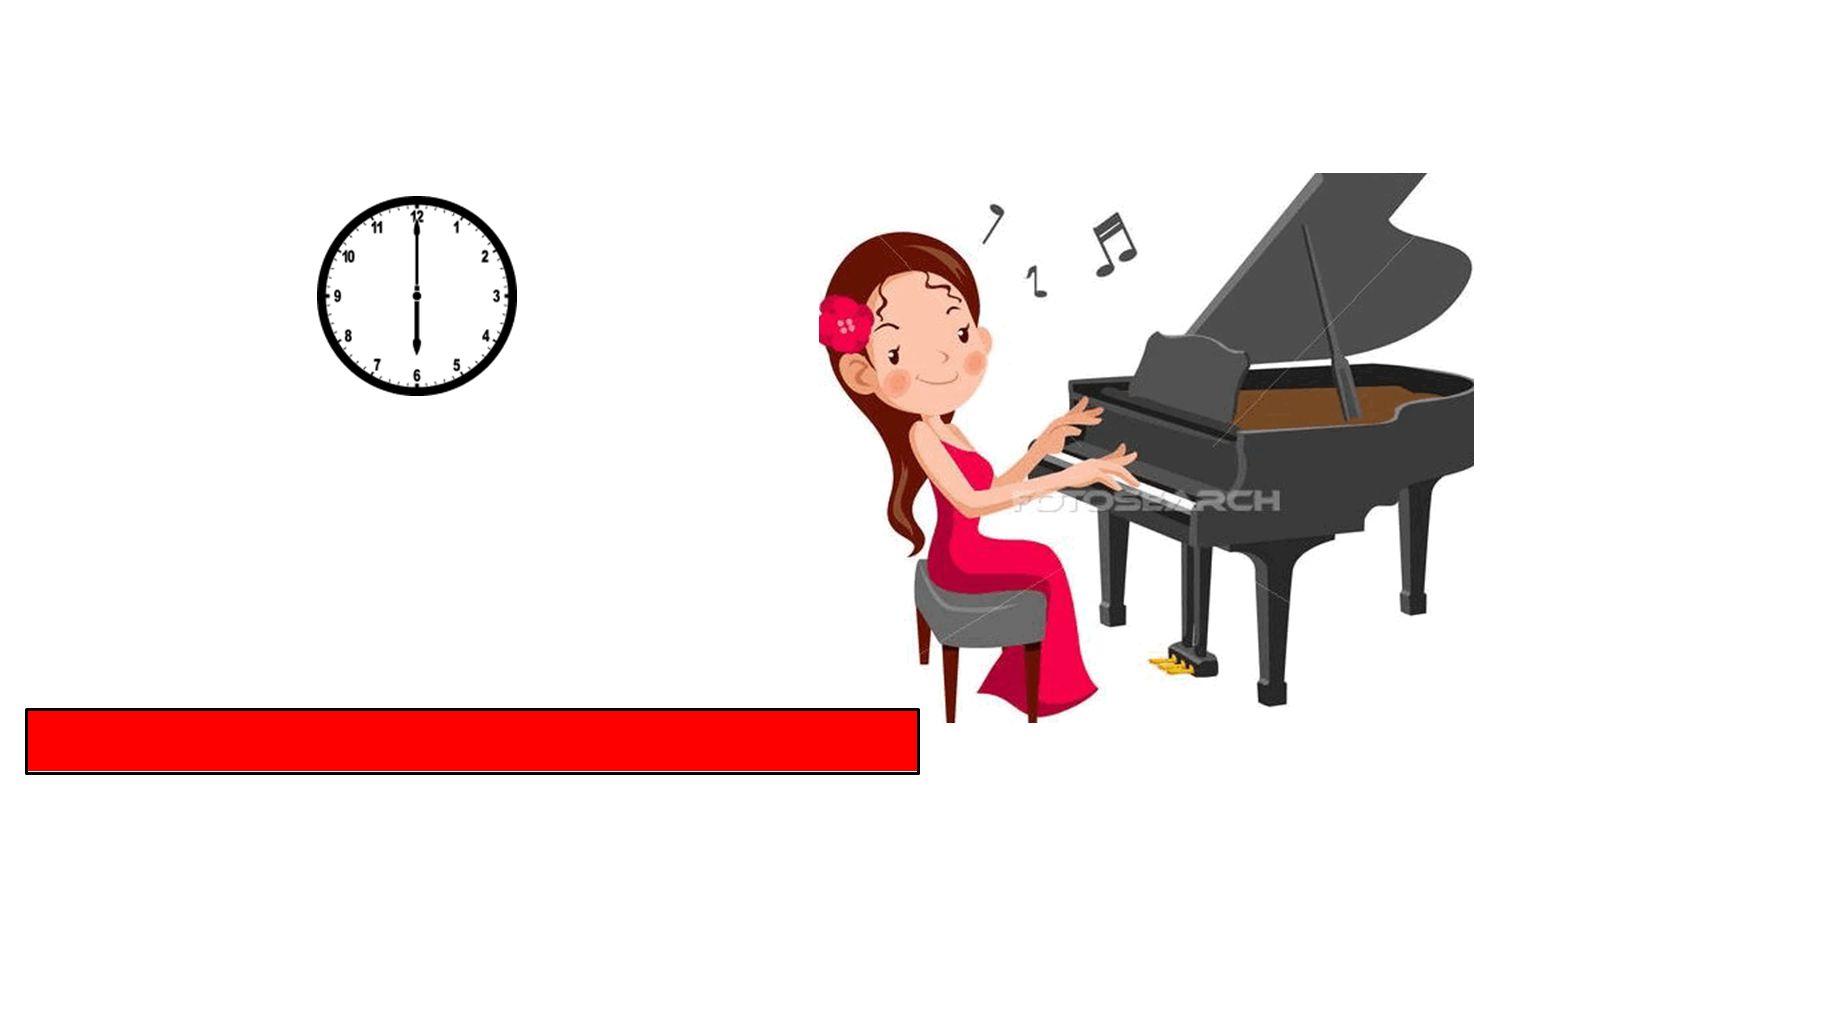 Sie spielt Klavier um sechs Uhr am Nachmittag.